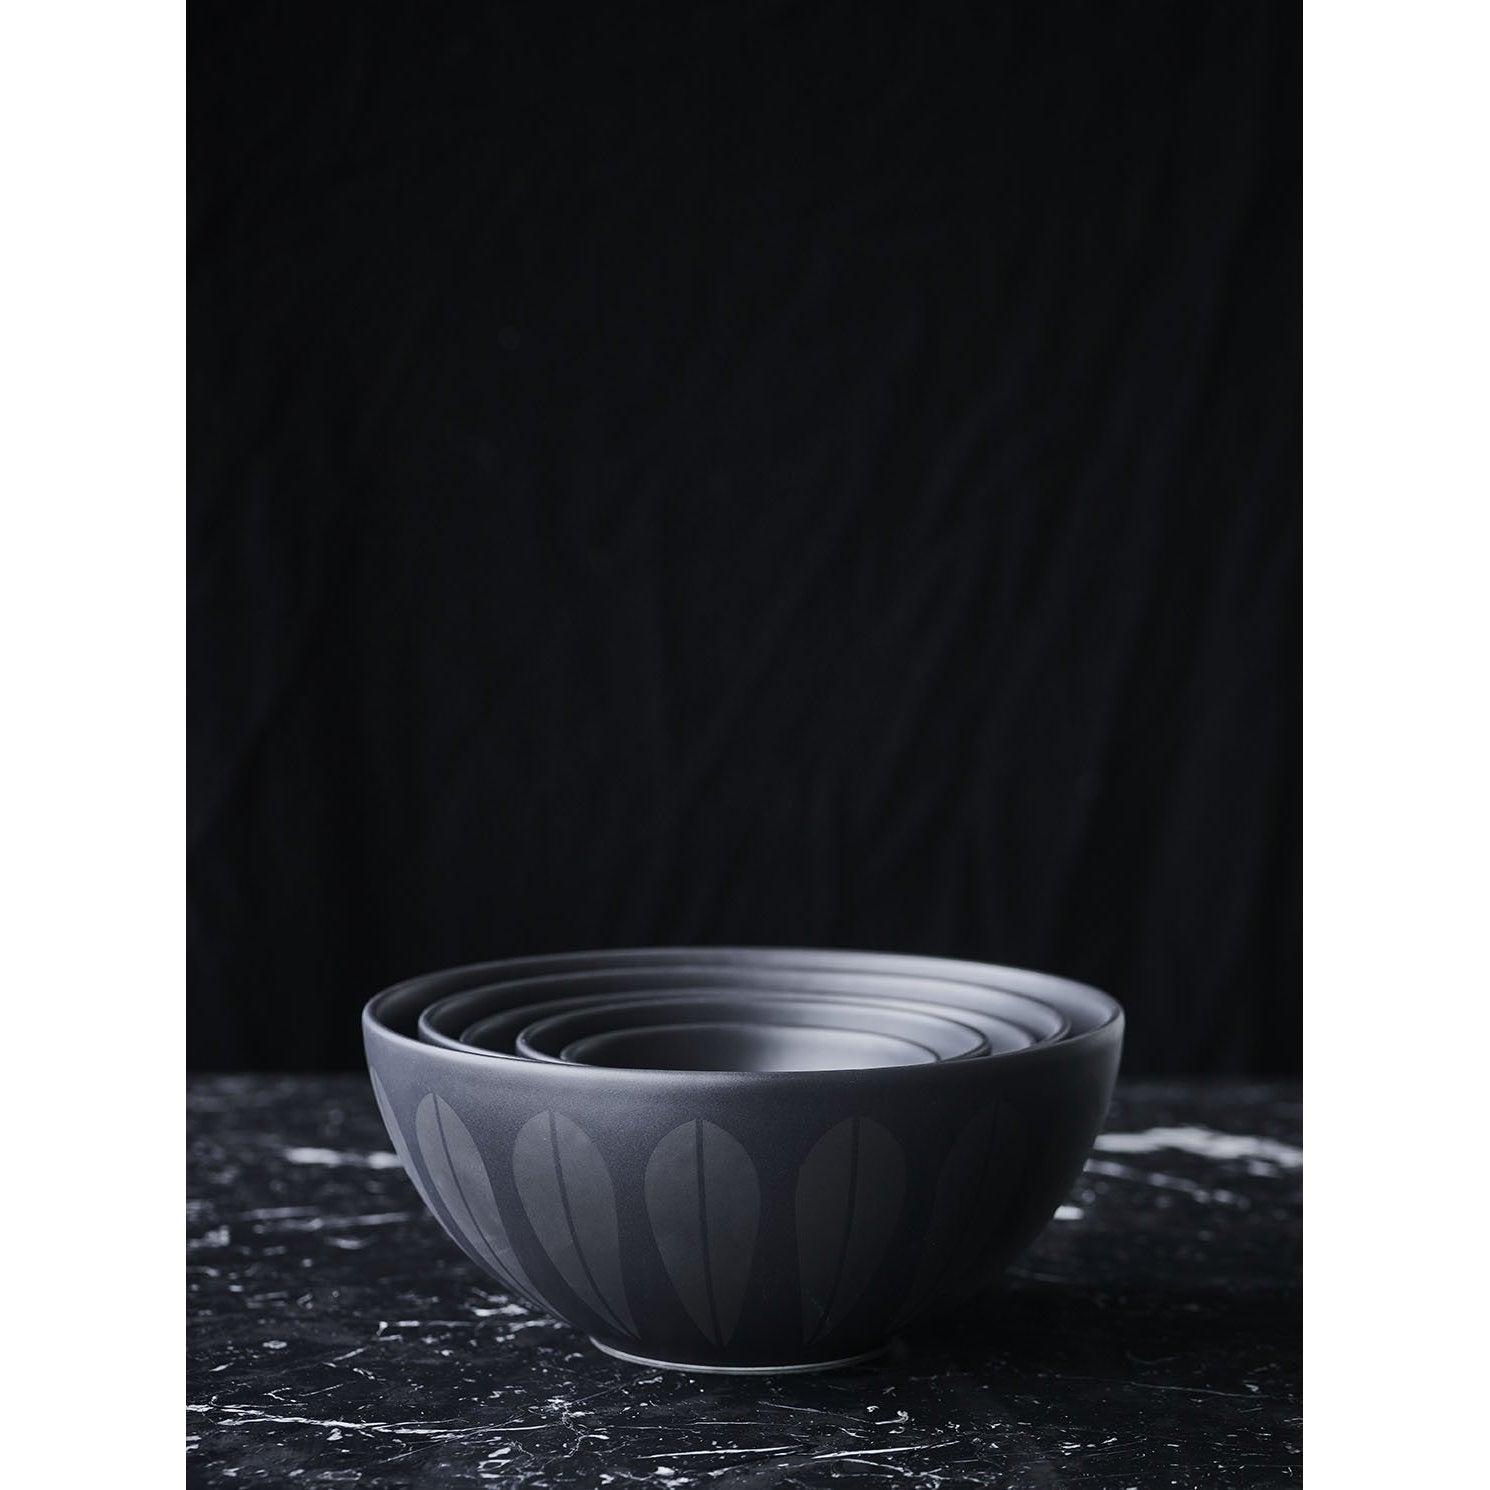 Lucie Kaas Arne Clausen Bowl mörkröd, 15 cm